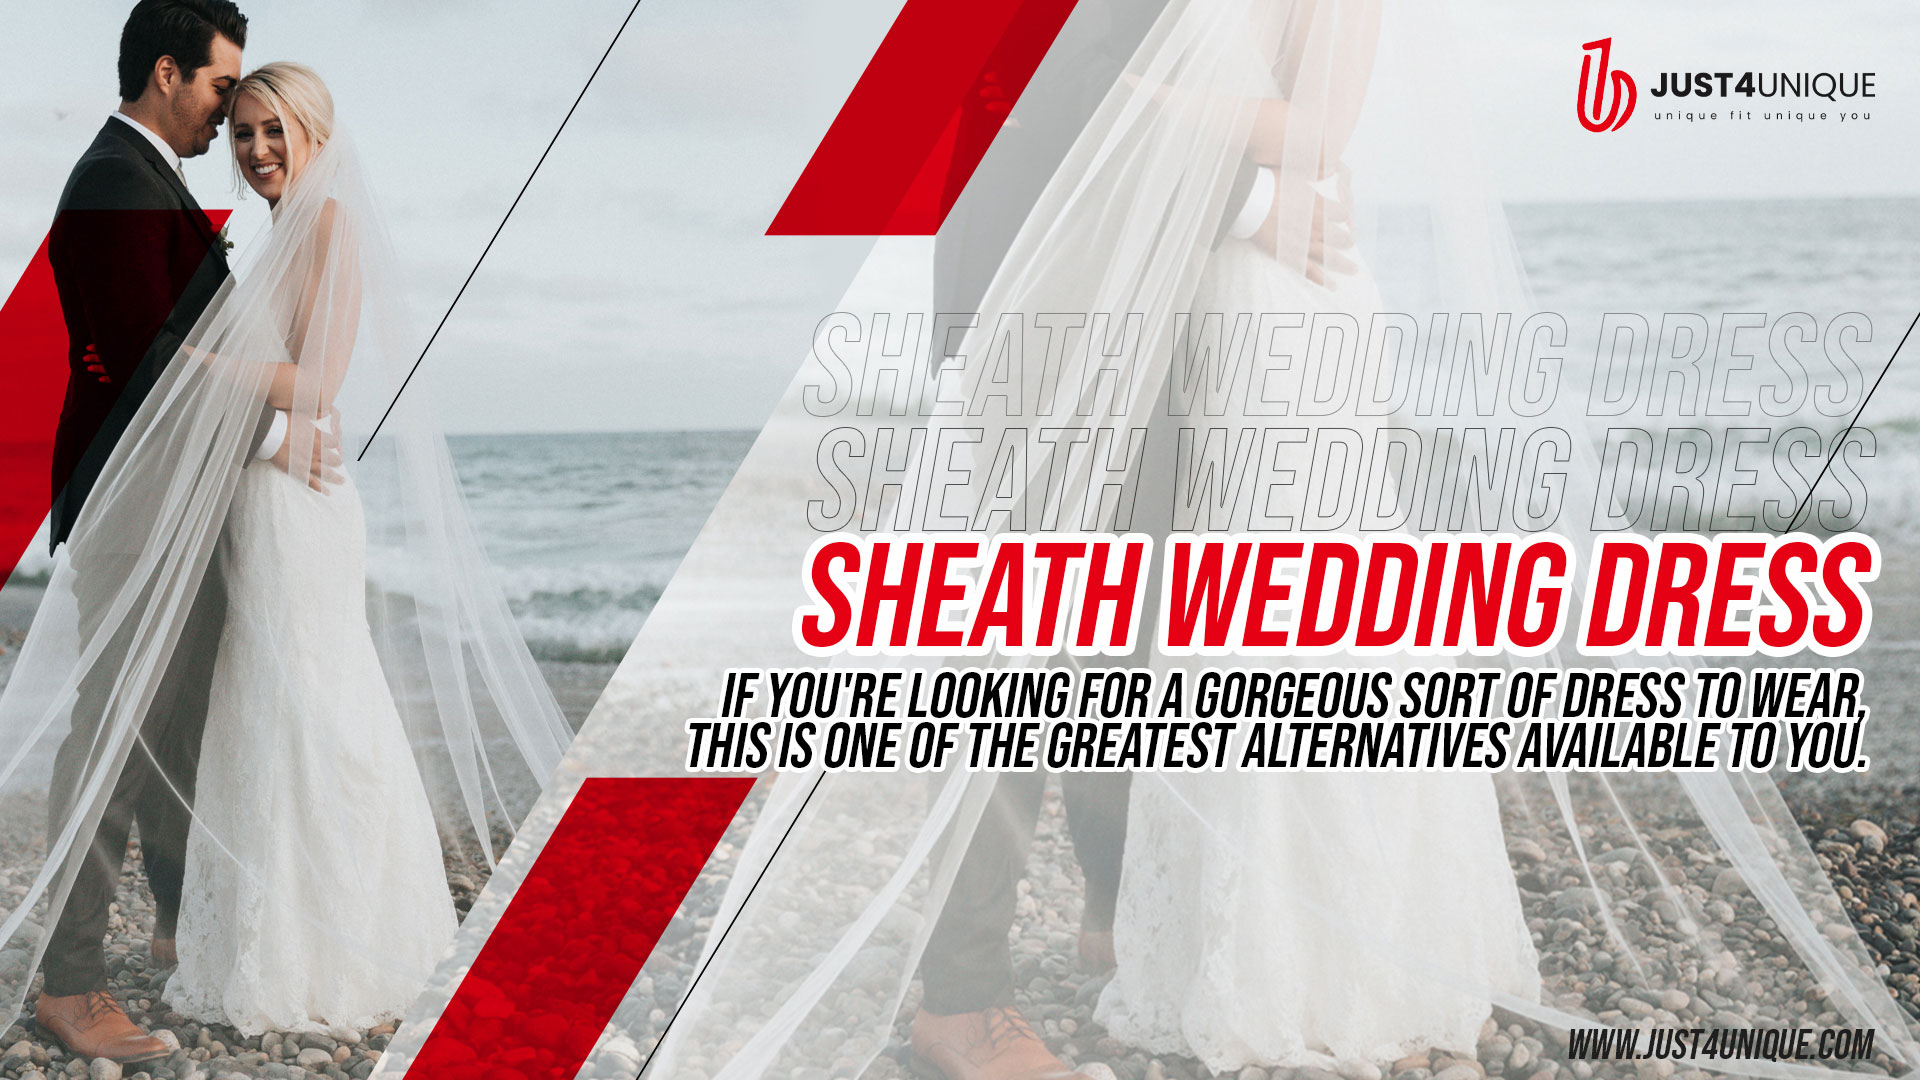 Sheath wedding dress